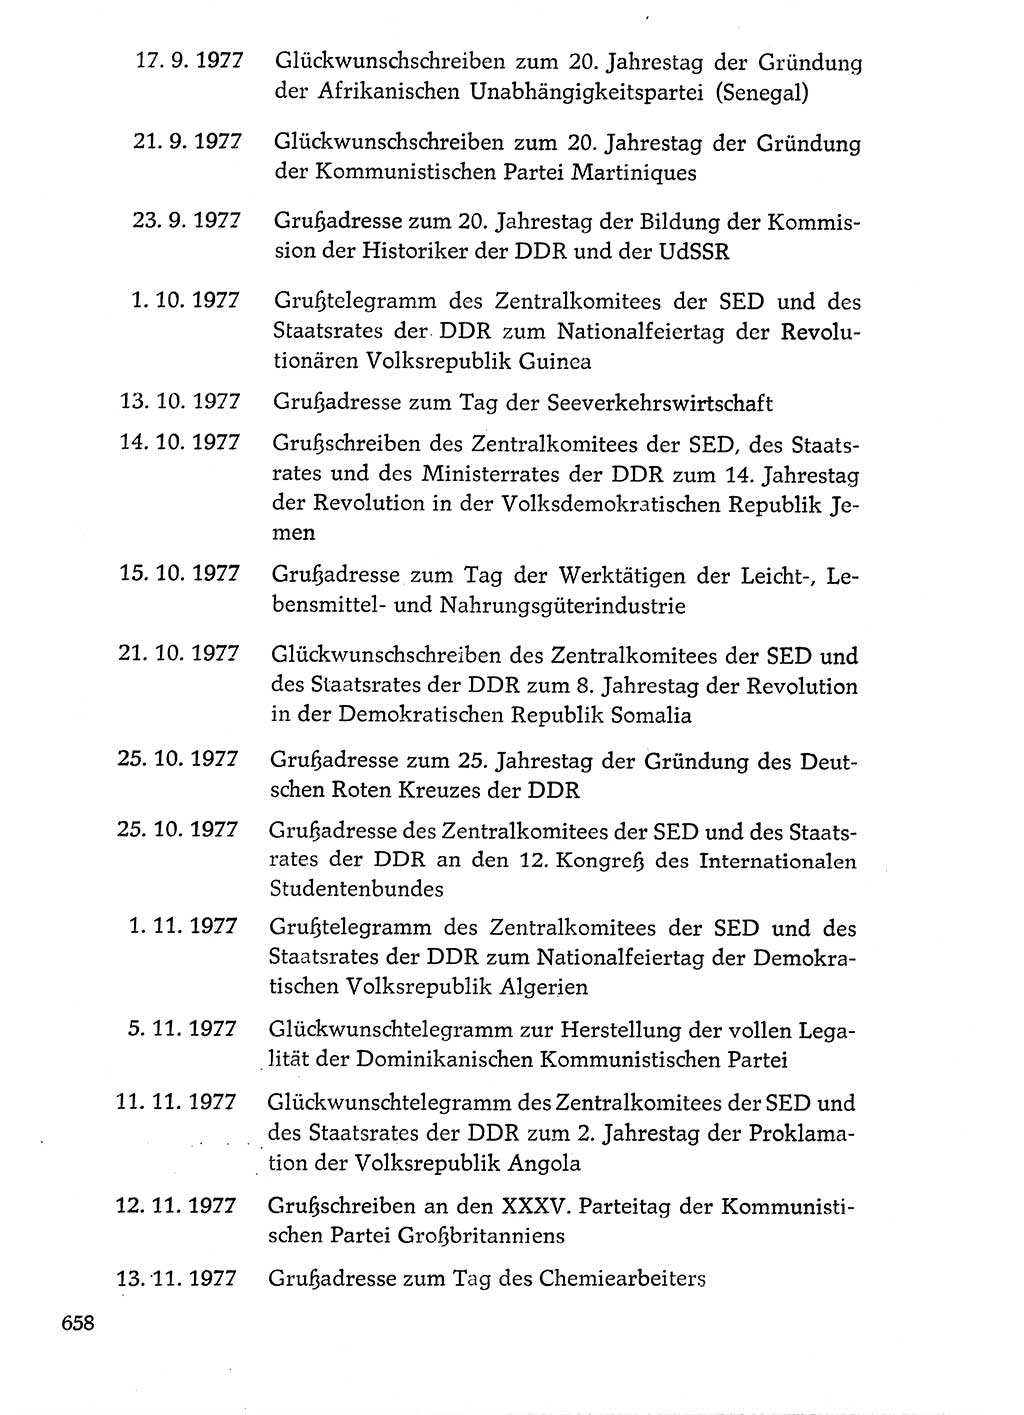 Dokumente der Sozialistischen Einheitspartei Deutschlands (SED) [Deutsche Demokratische Republik (DDR)] 1976-1977, Seite 658 (Dok. SED DDR 1976-1977, S. 658)